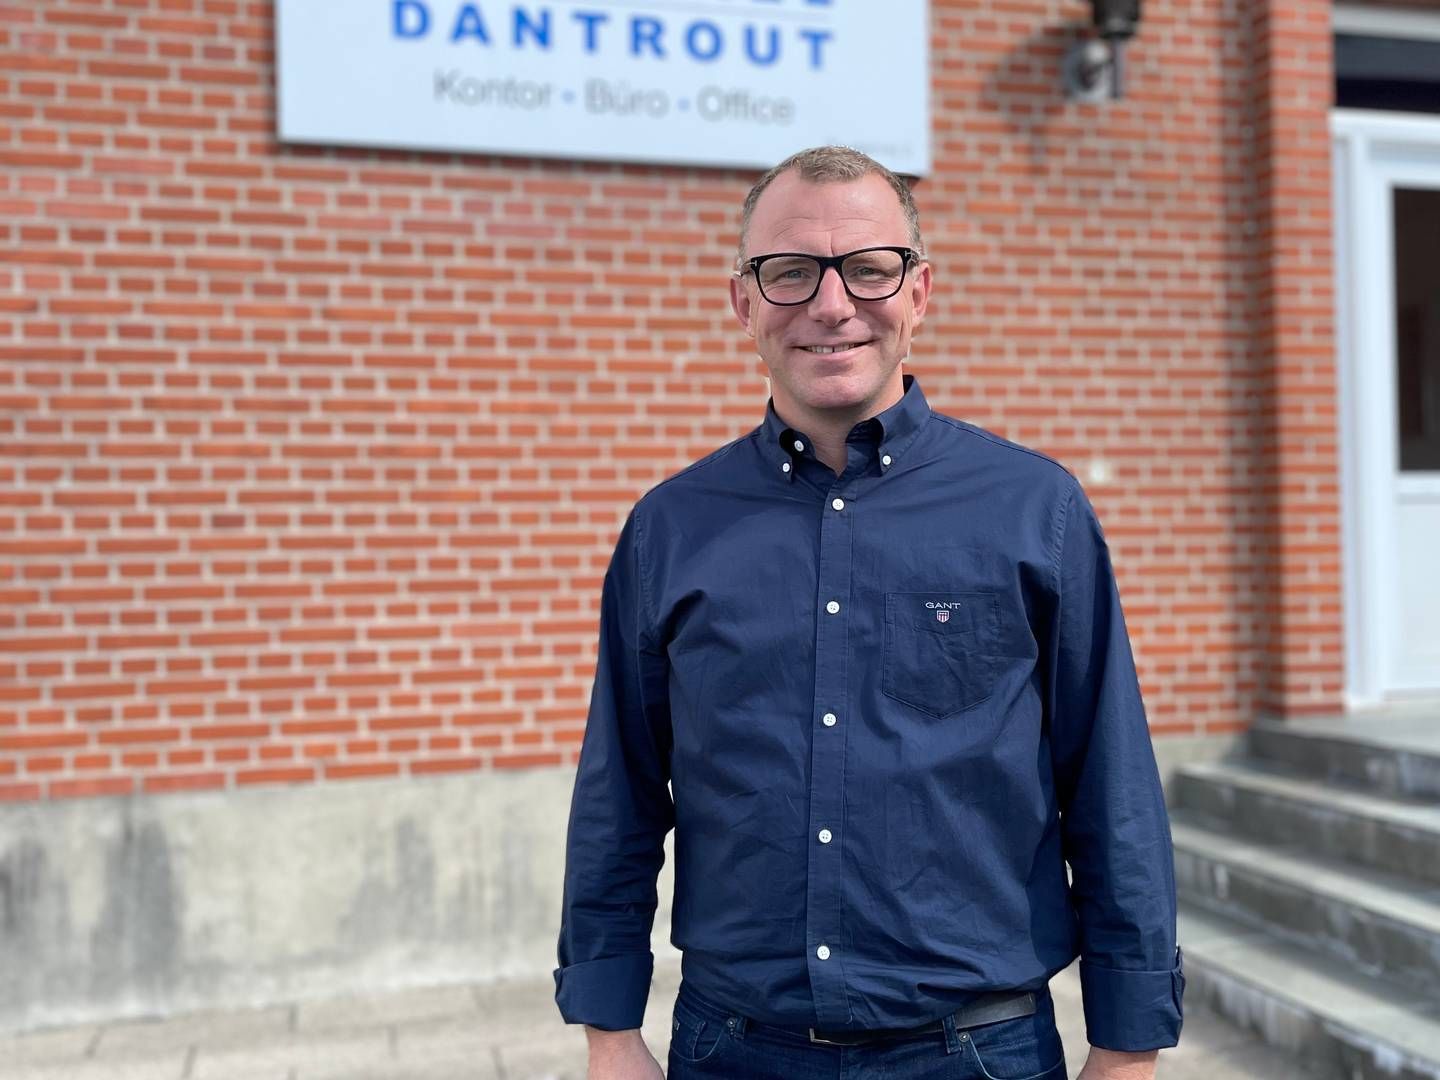 Adm. direktør Steffen Nielsen har i knap to år stået i spidsen for ørredkoncernen Danforel med hovedsæde i Grindsted. Opgaven har lydt på at få genskabt lønsomheden i et hårdt marked.